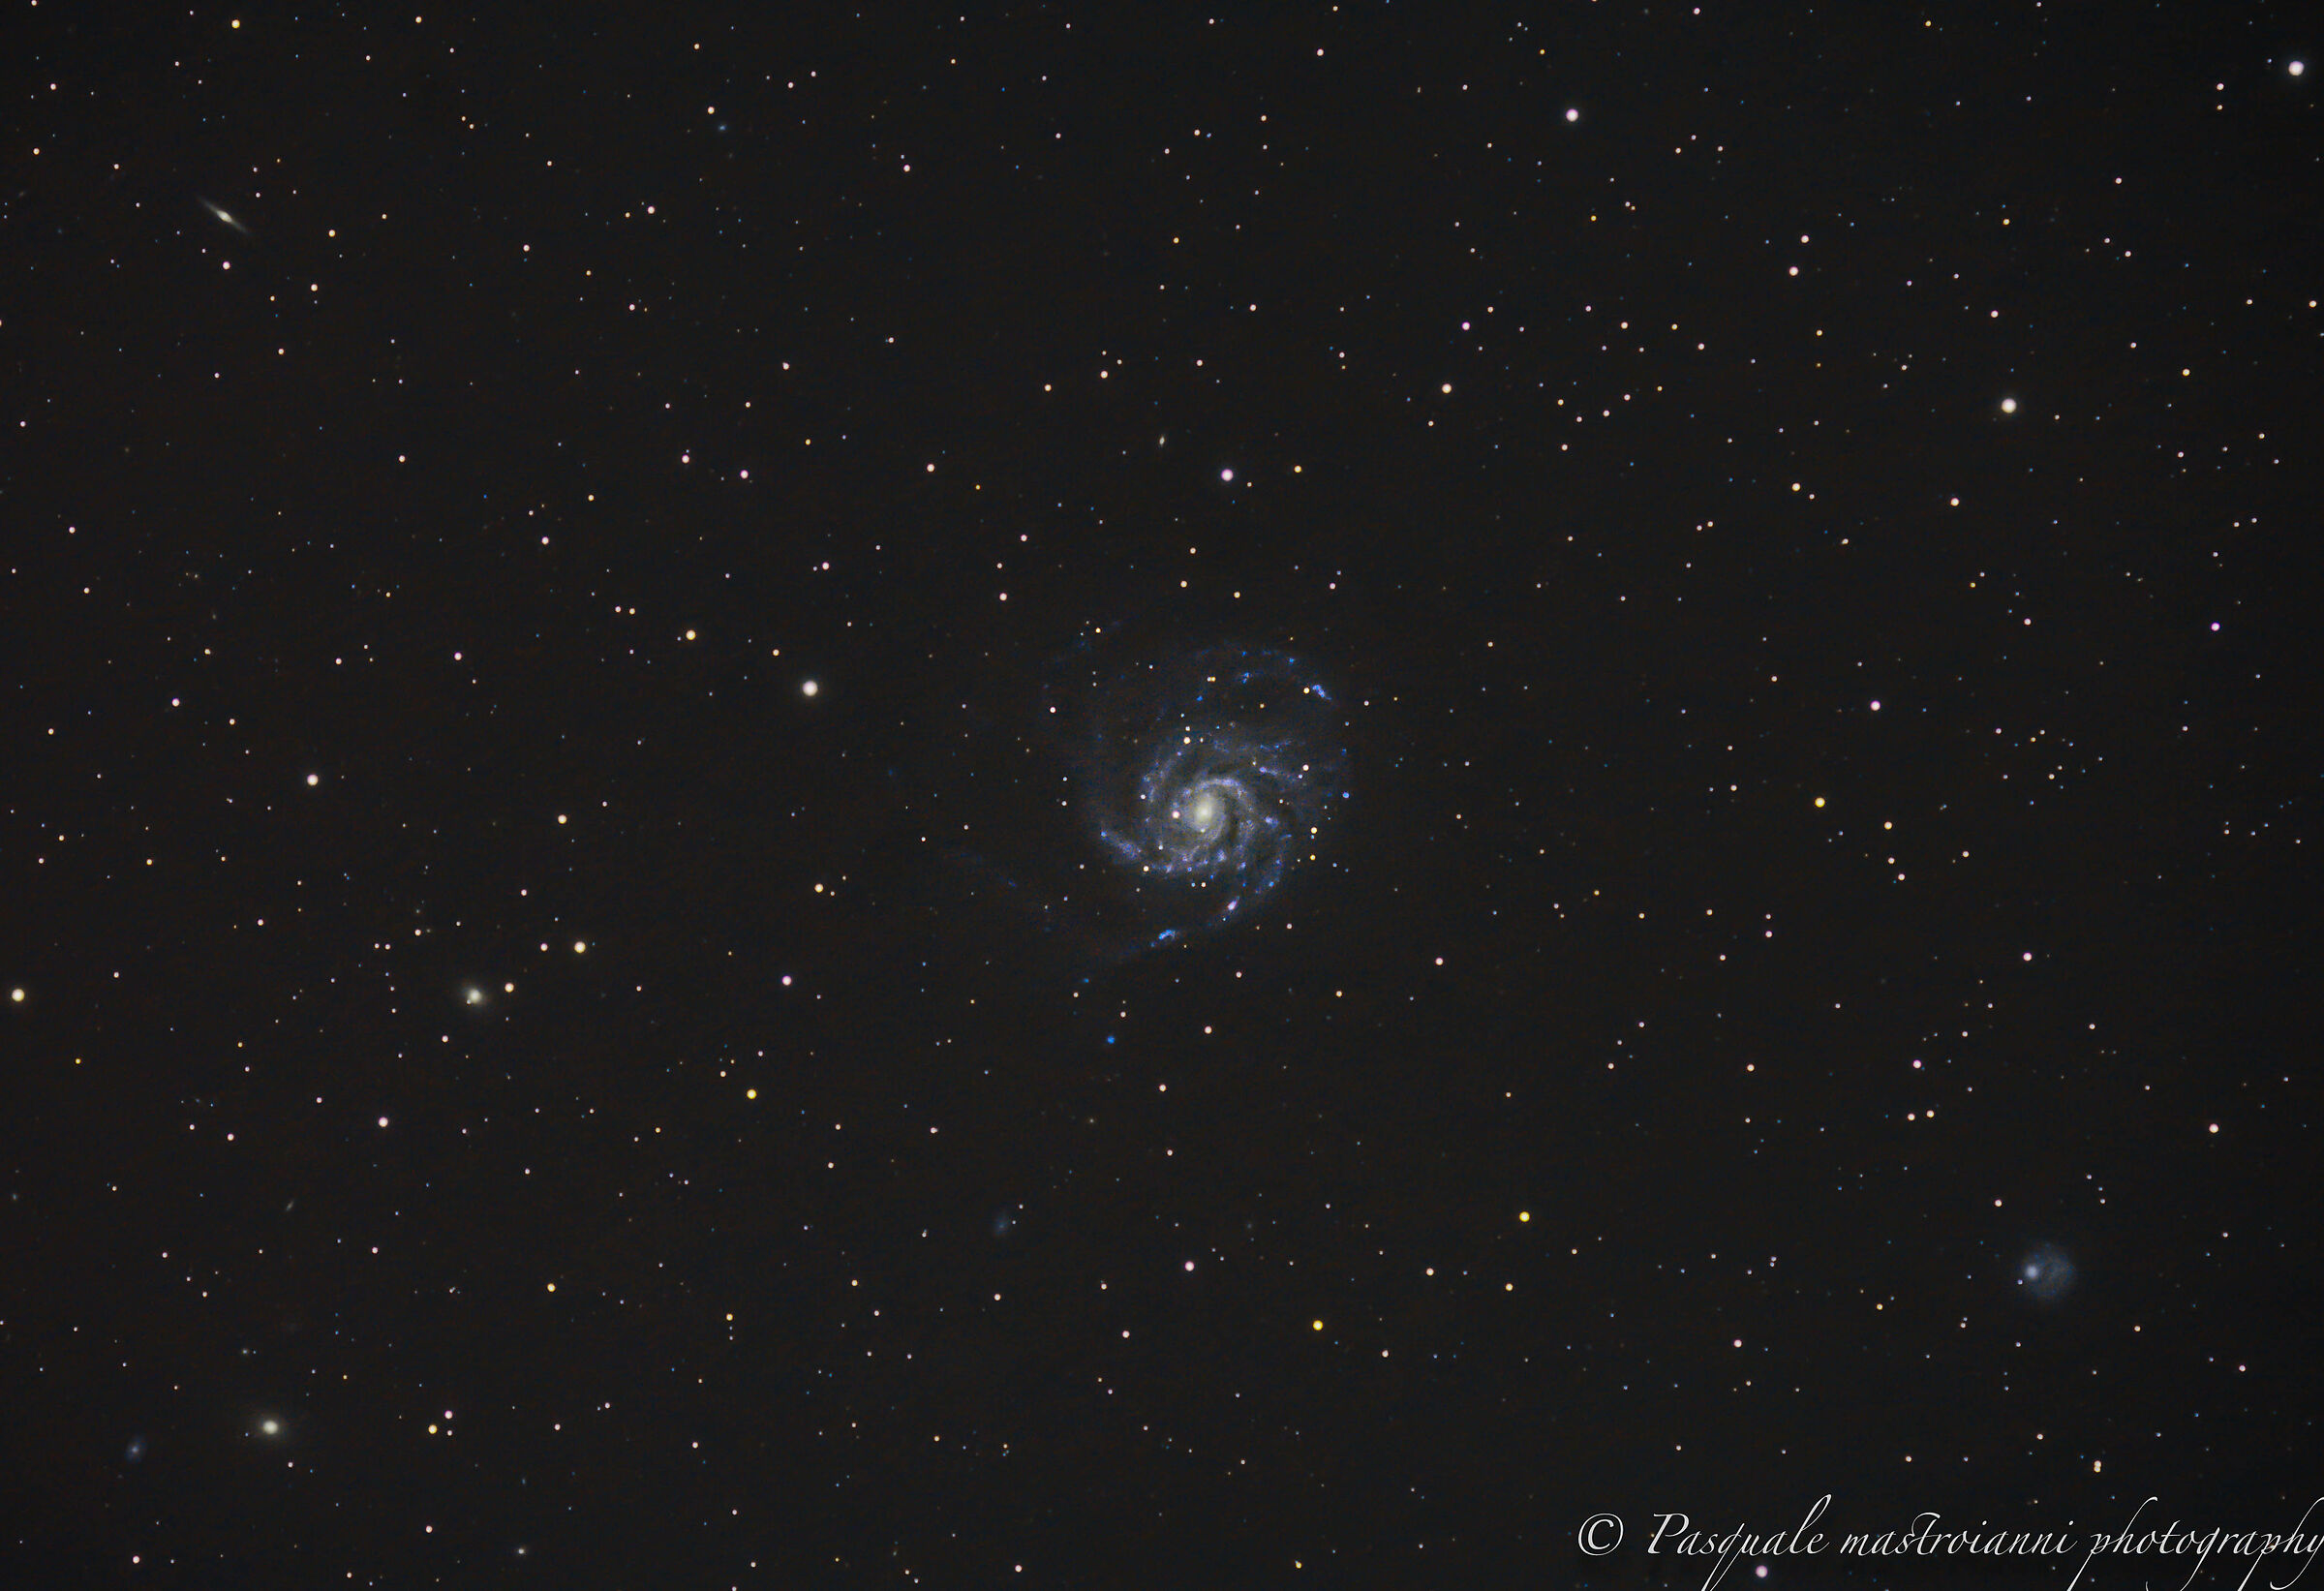 The Galaxy M101...